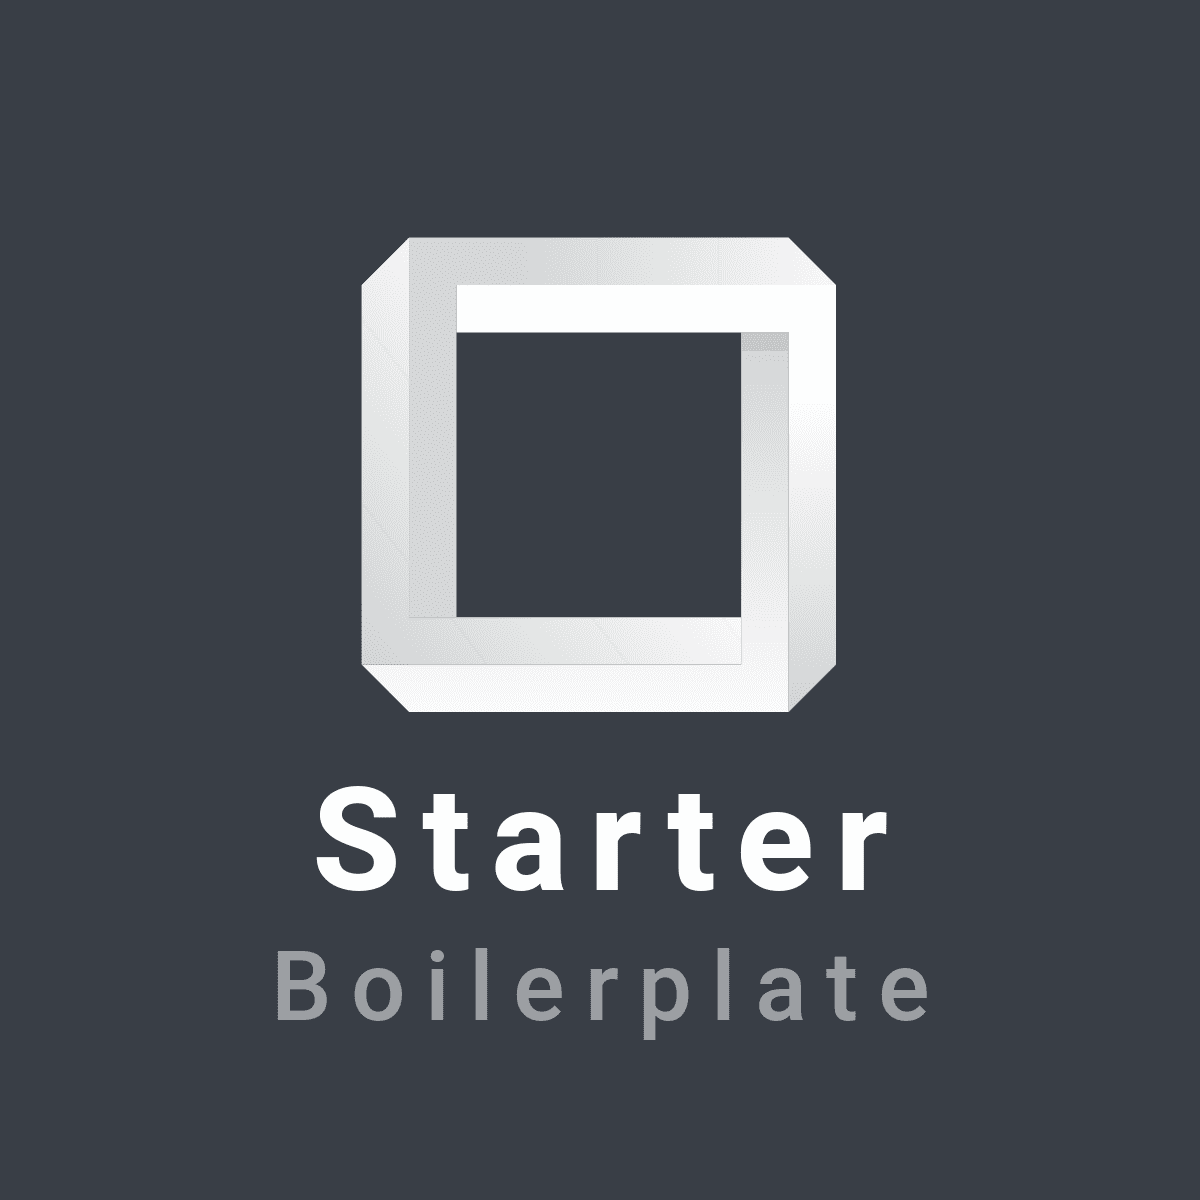 Starter Boilerplate